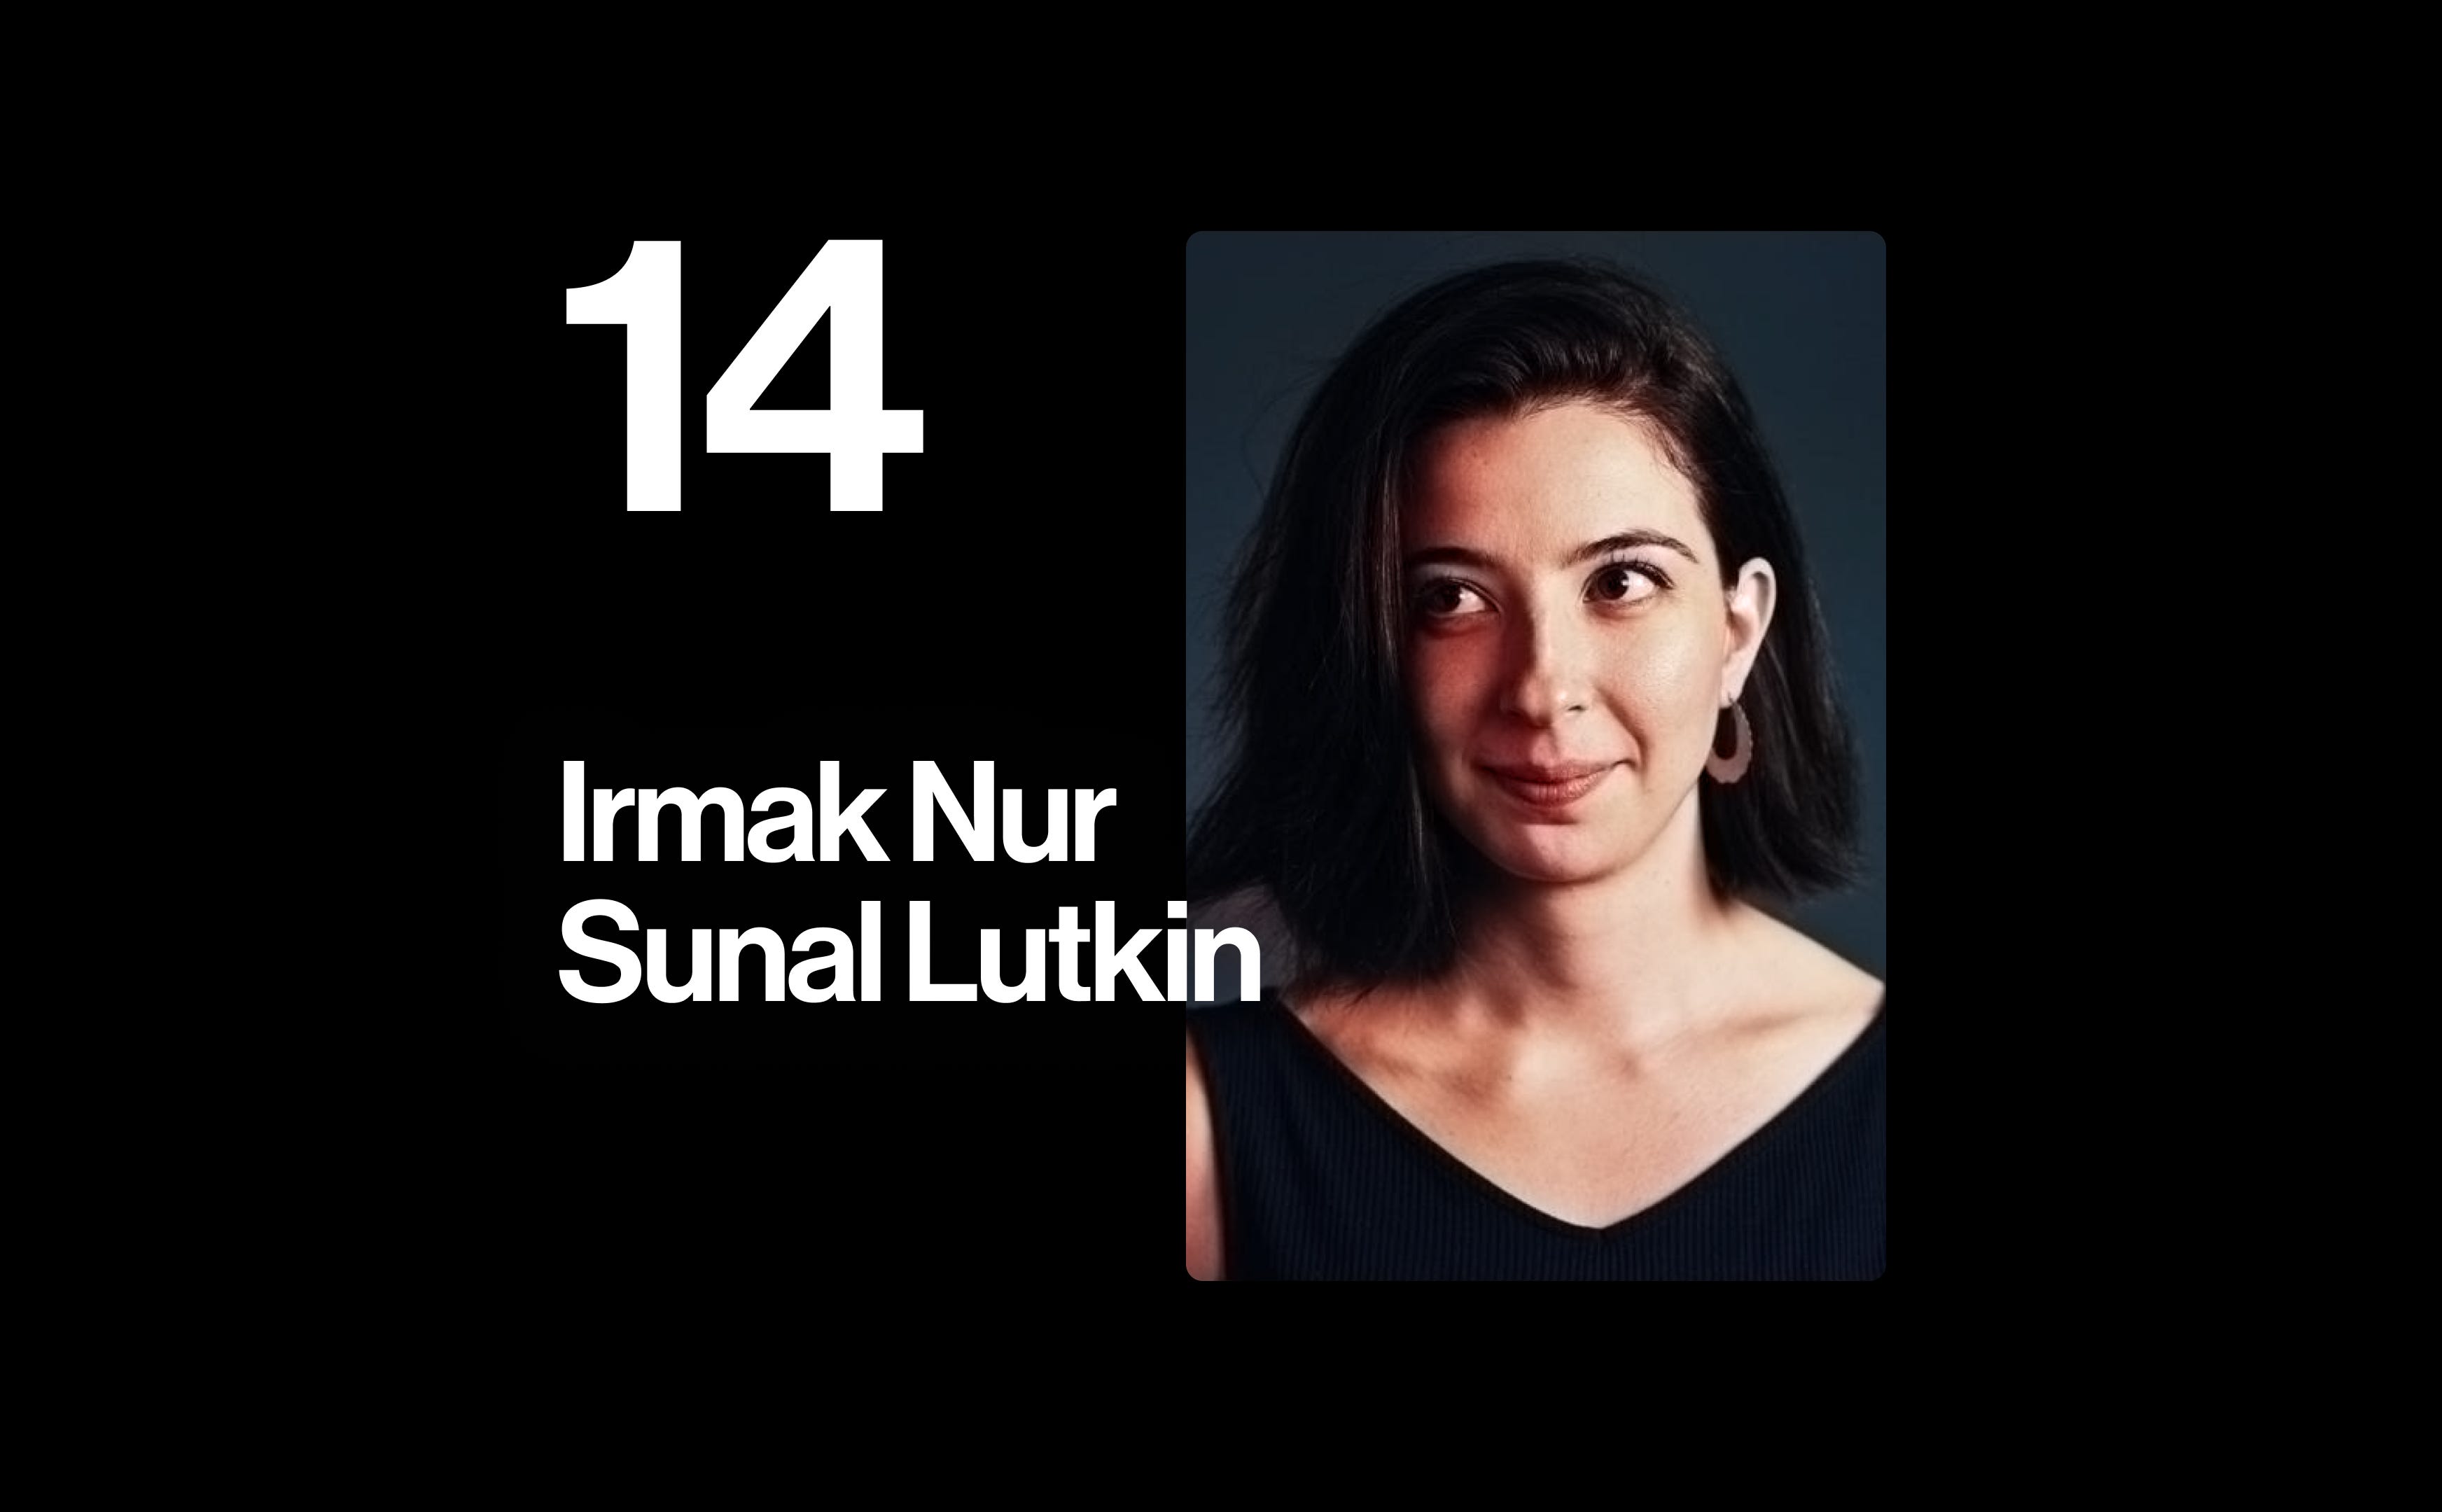 Irmak Nur Sunal Lutkin: Reuters Design Director